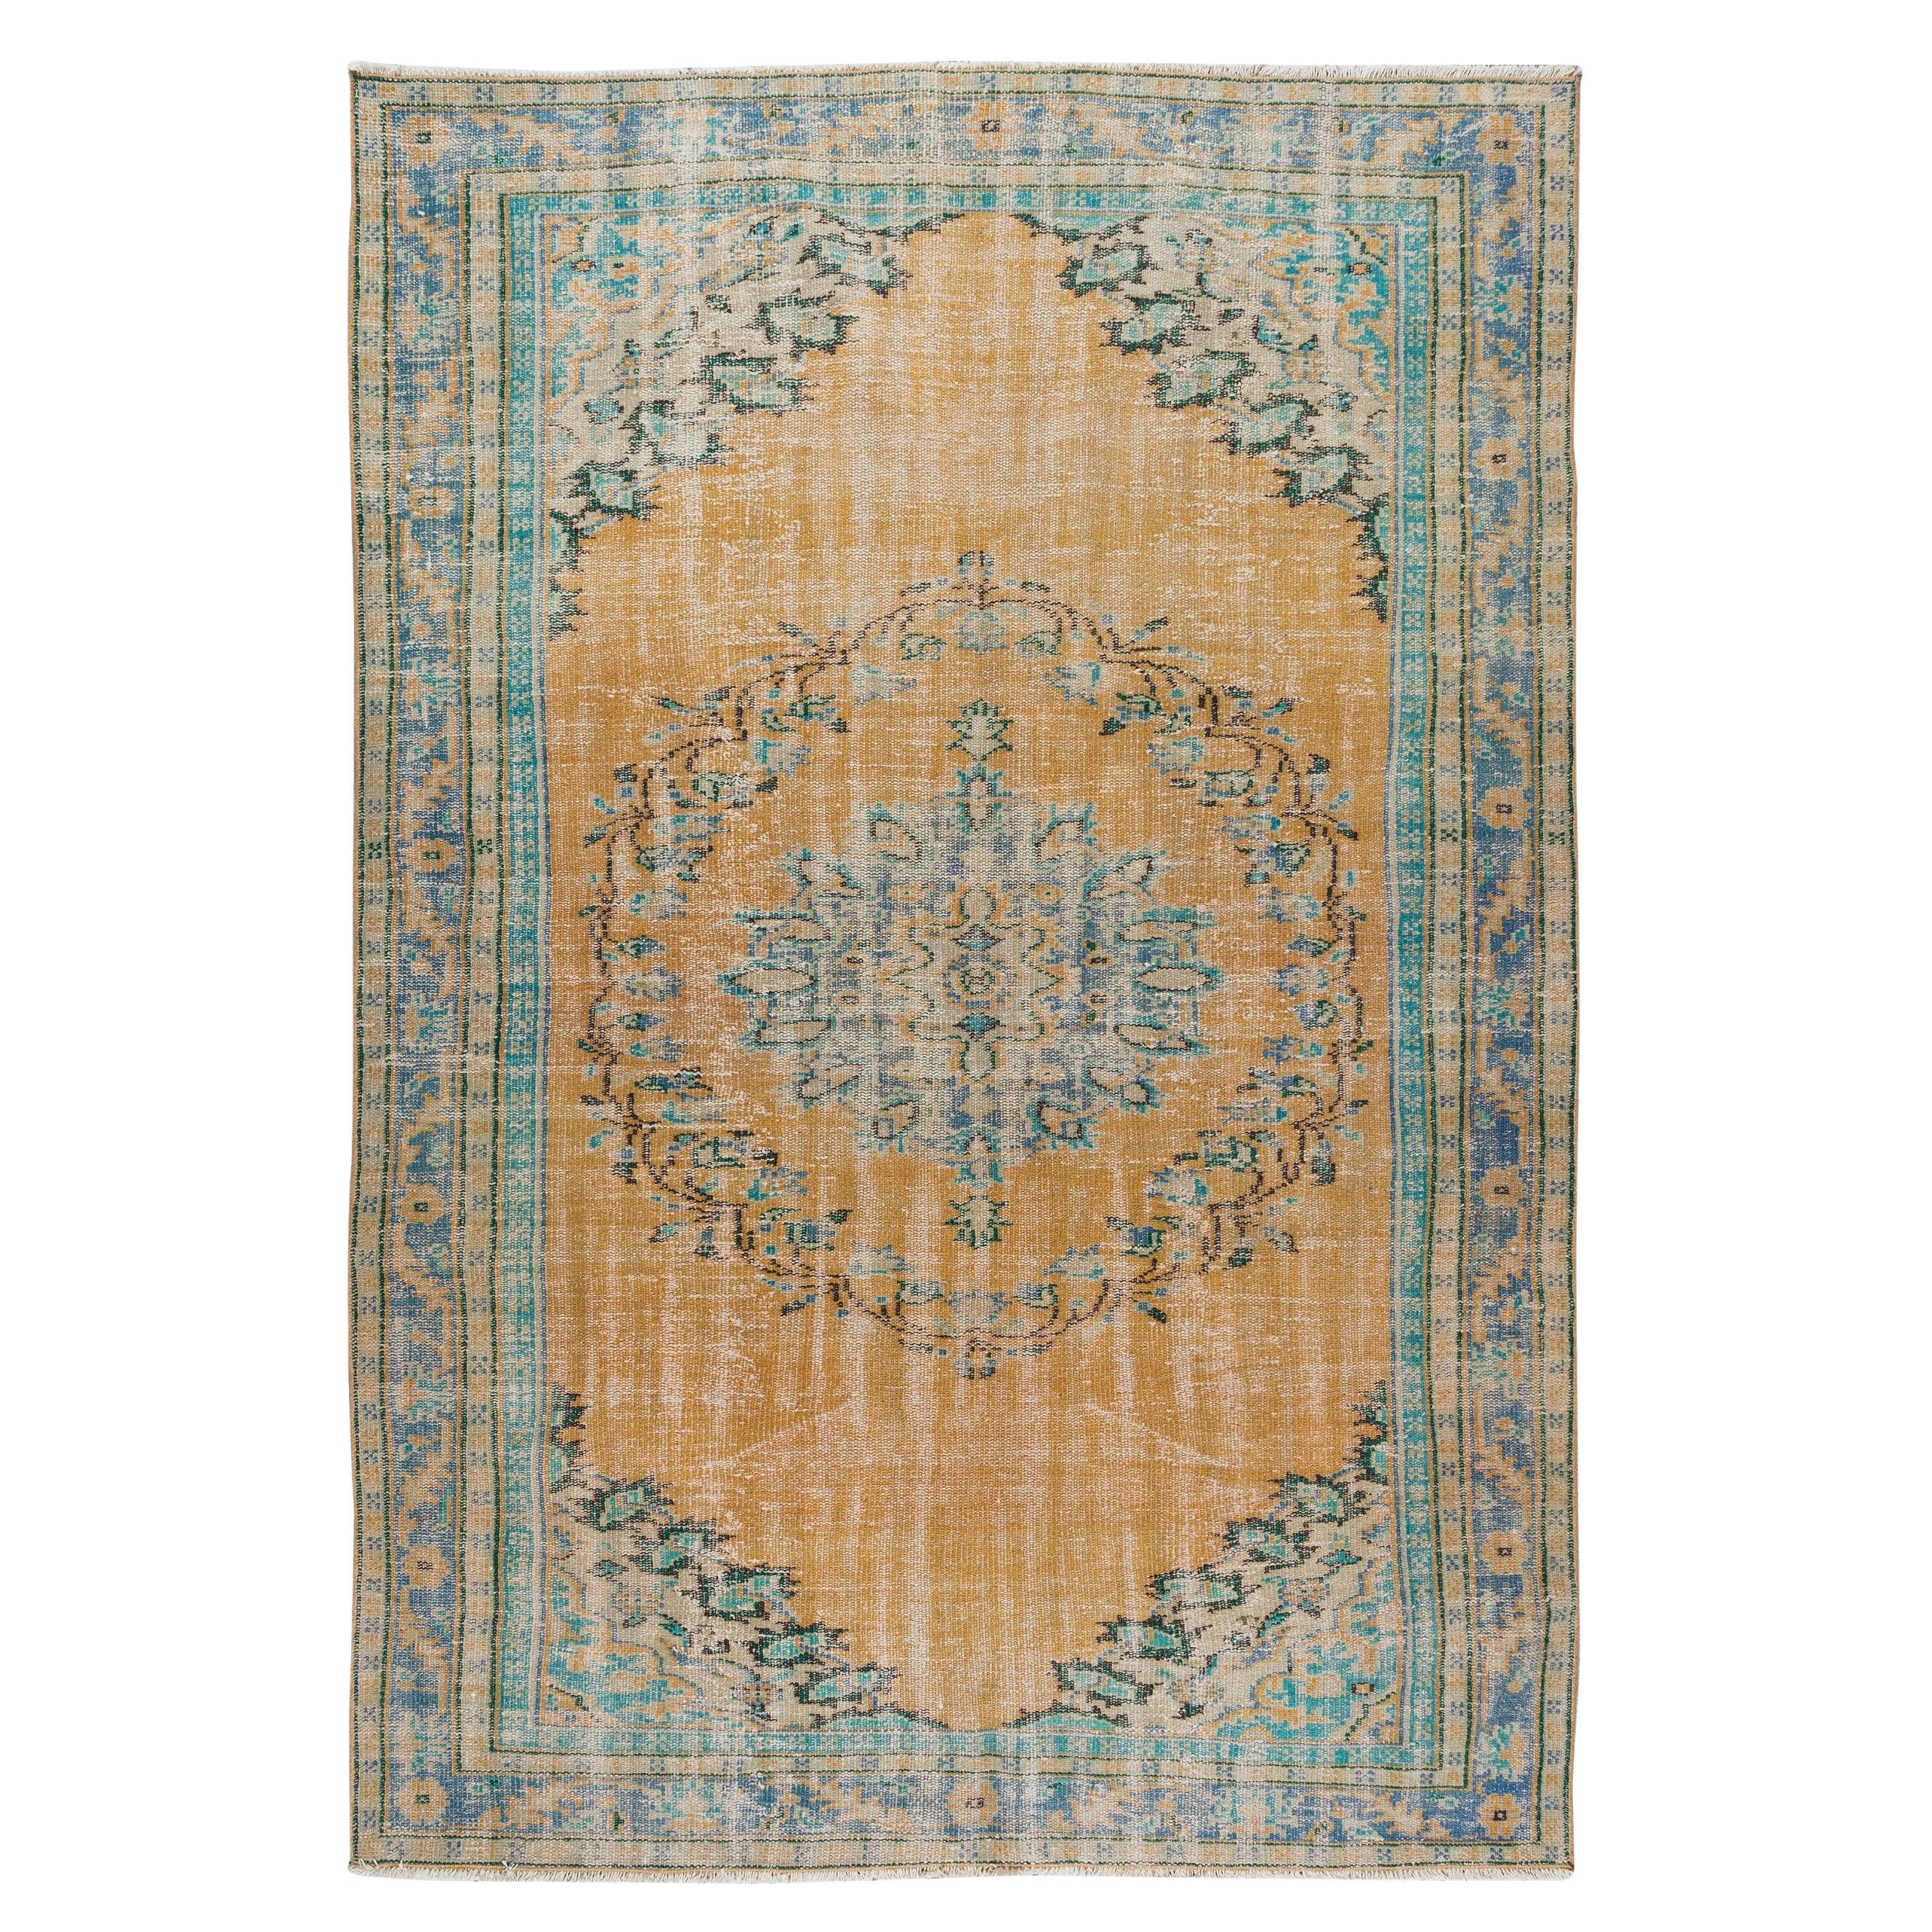 Türkischer Vintage-Teppich in Orange, Blau und Grün, 6x8.6 Ft, handgefertigt mit Medaillonmuster